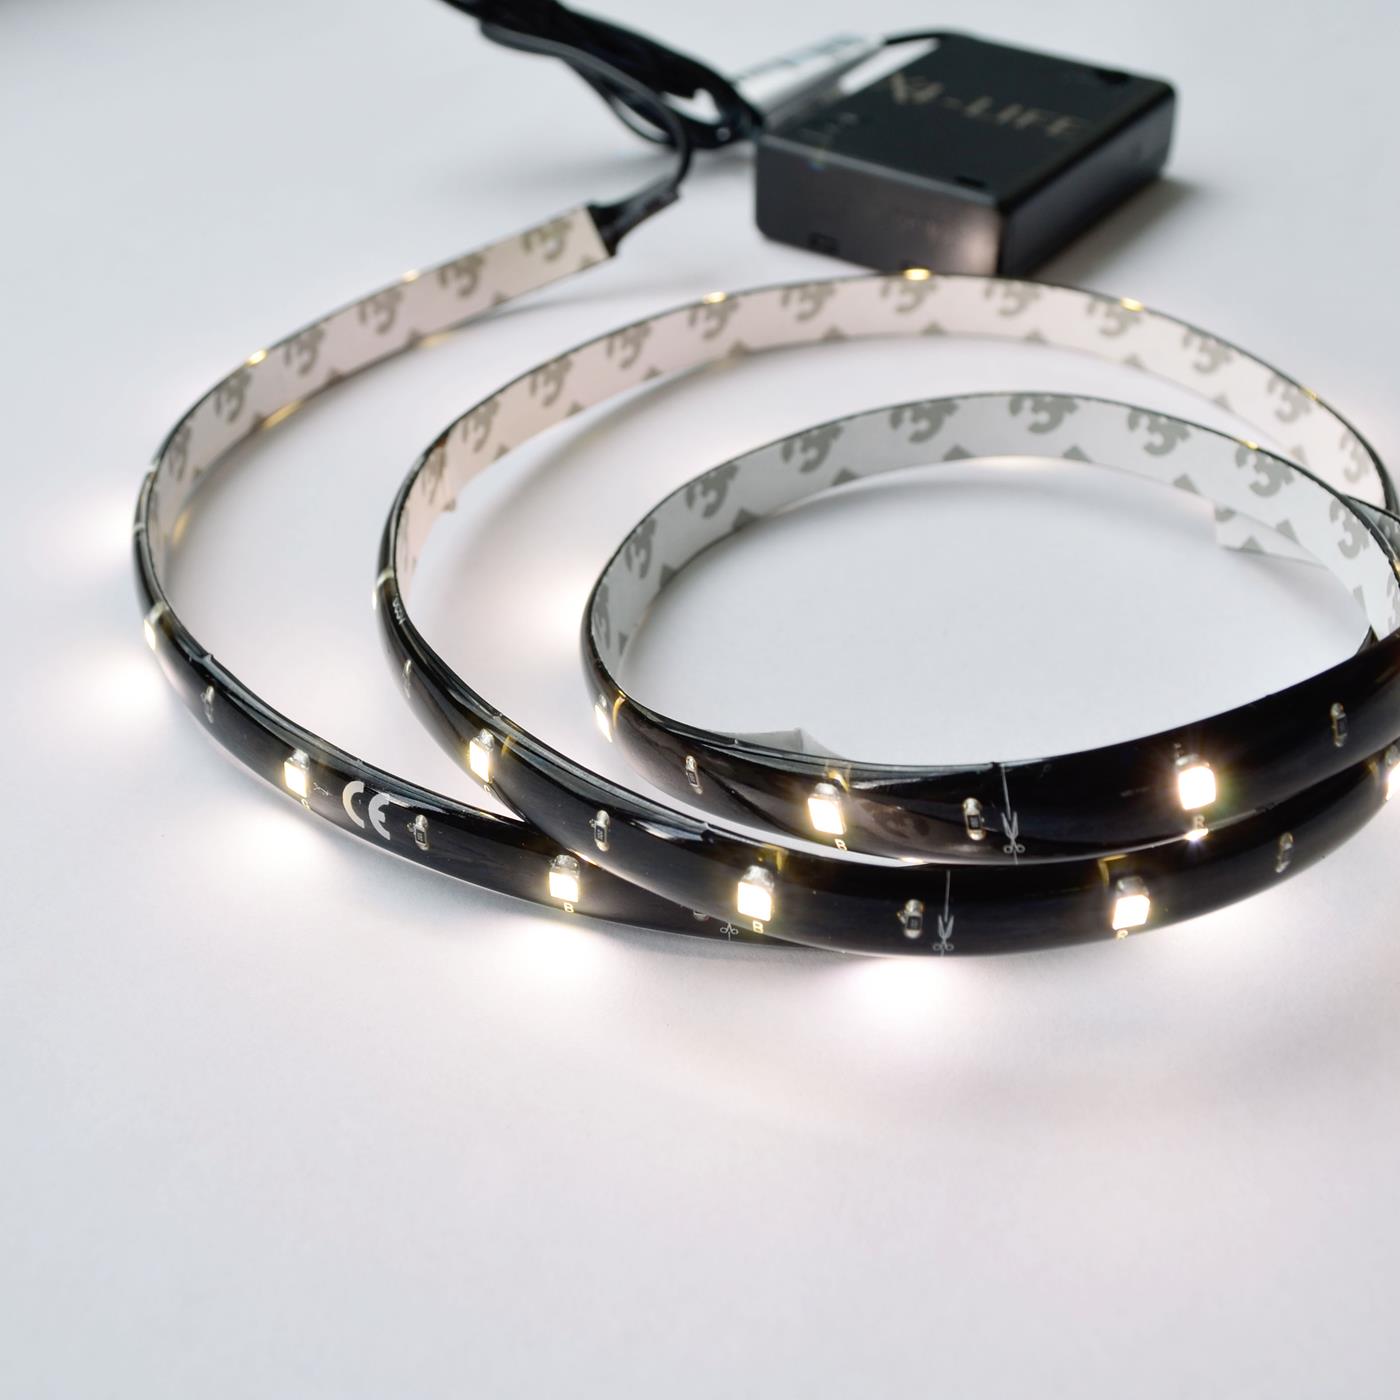 X4-LIFE LED Strip 1 m warm-weiss 1.5W/ AA / kürzbar / 30 LEDs / selbstklebend